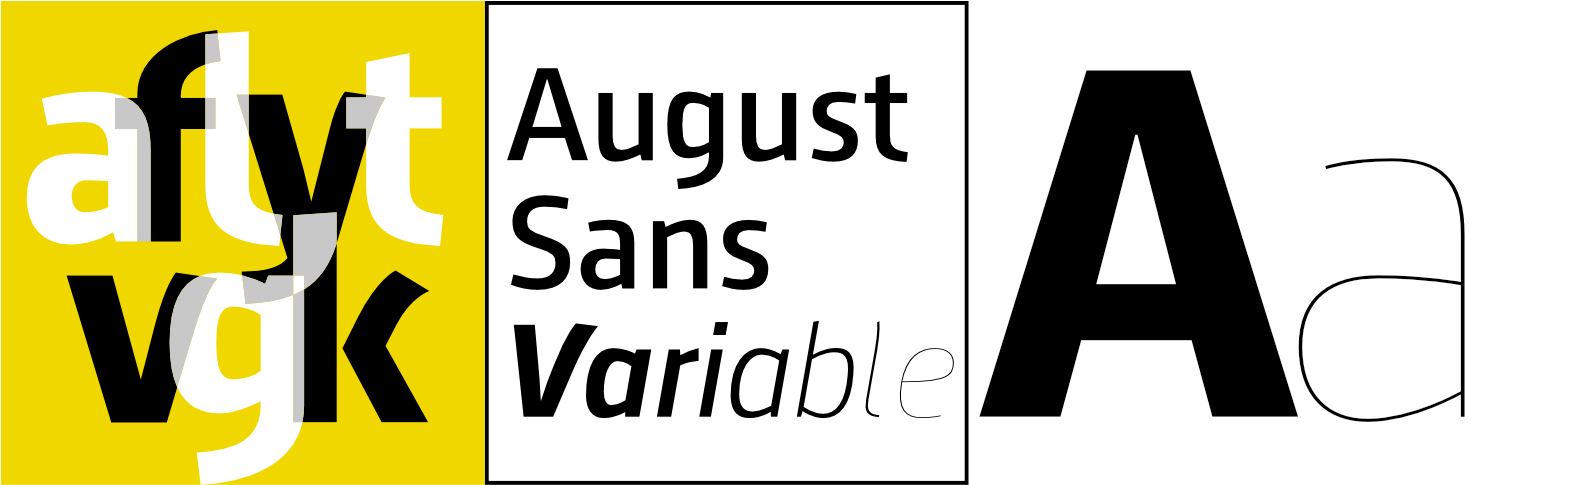 Variable Font August Sans Serif